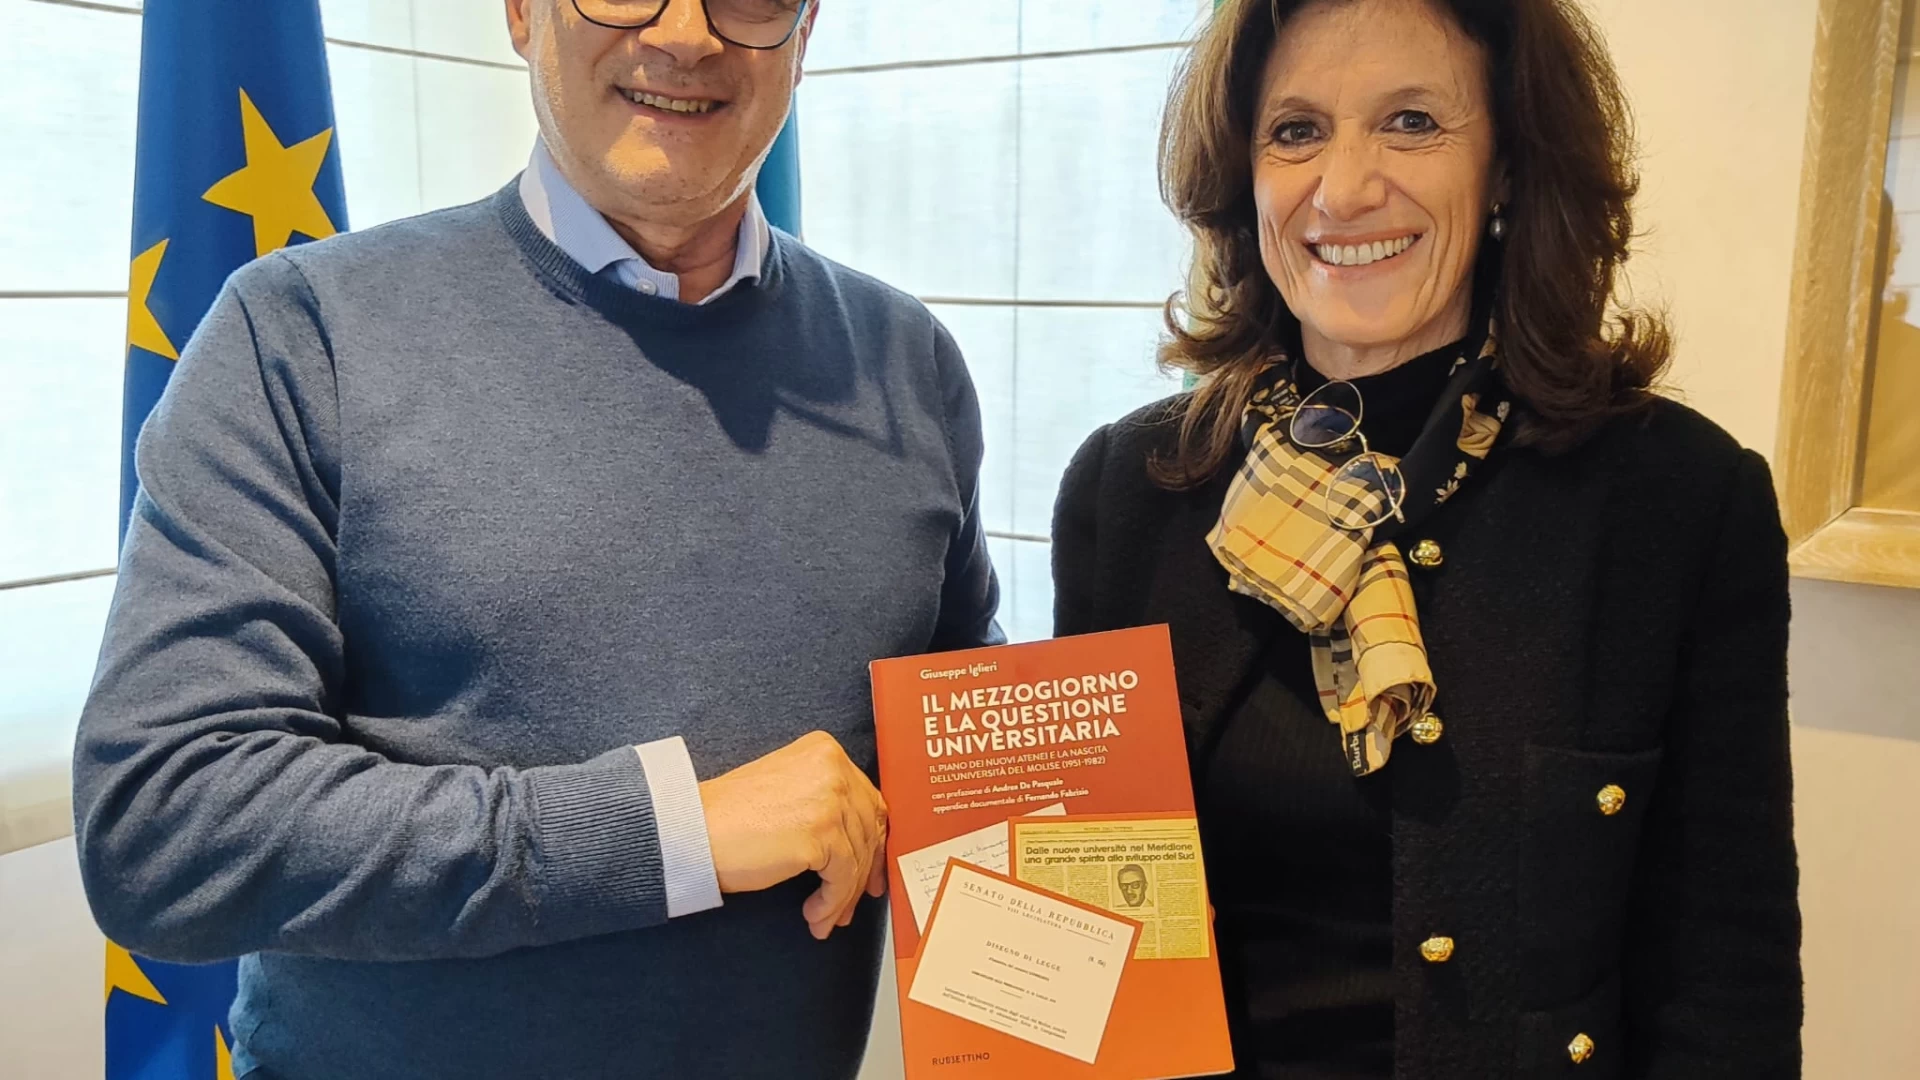 Fondazione Lello Lombardi, governatore Toma riceve visita della presidente: “Grazie per l'opera di divulgazione della cultura storico-politica italiana”.